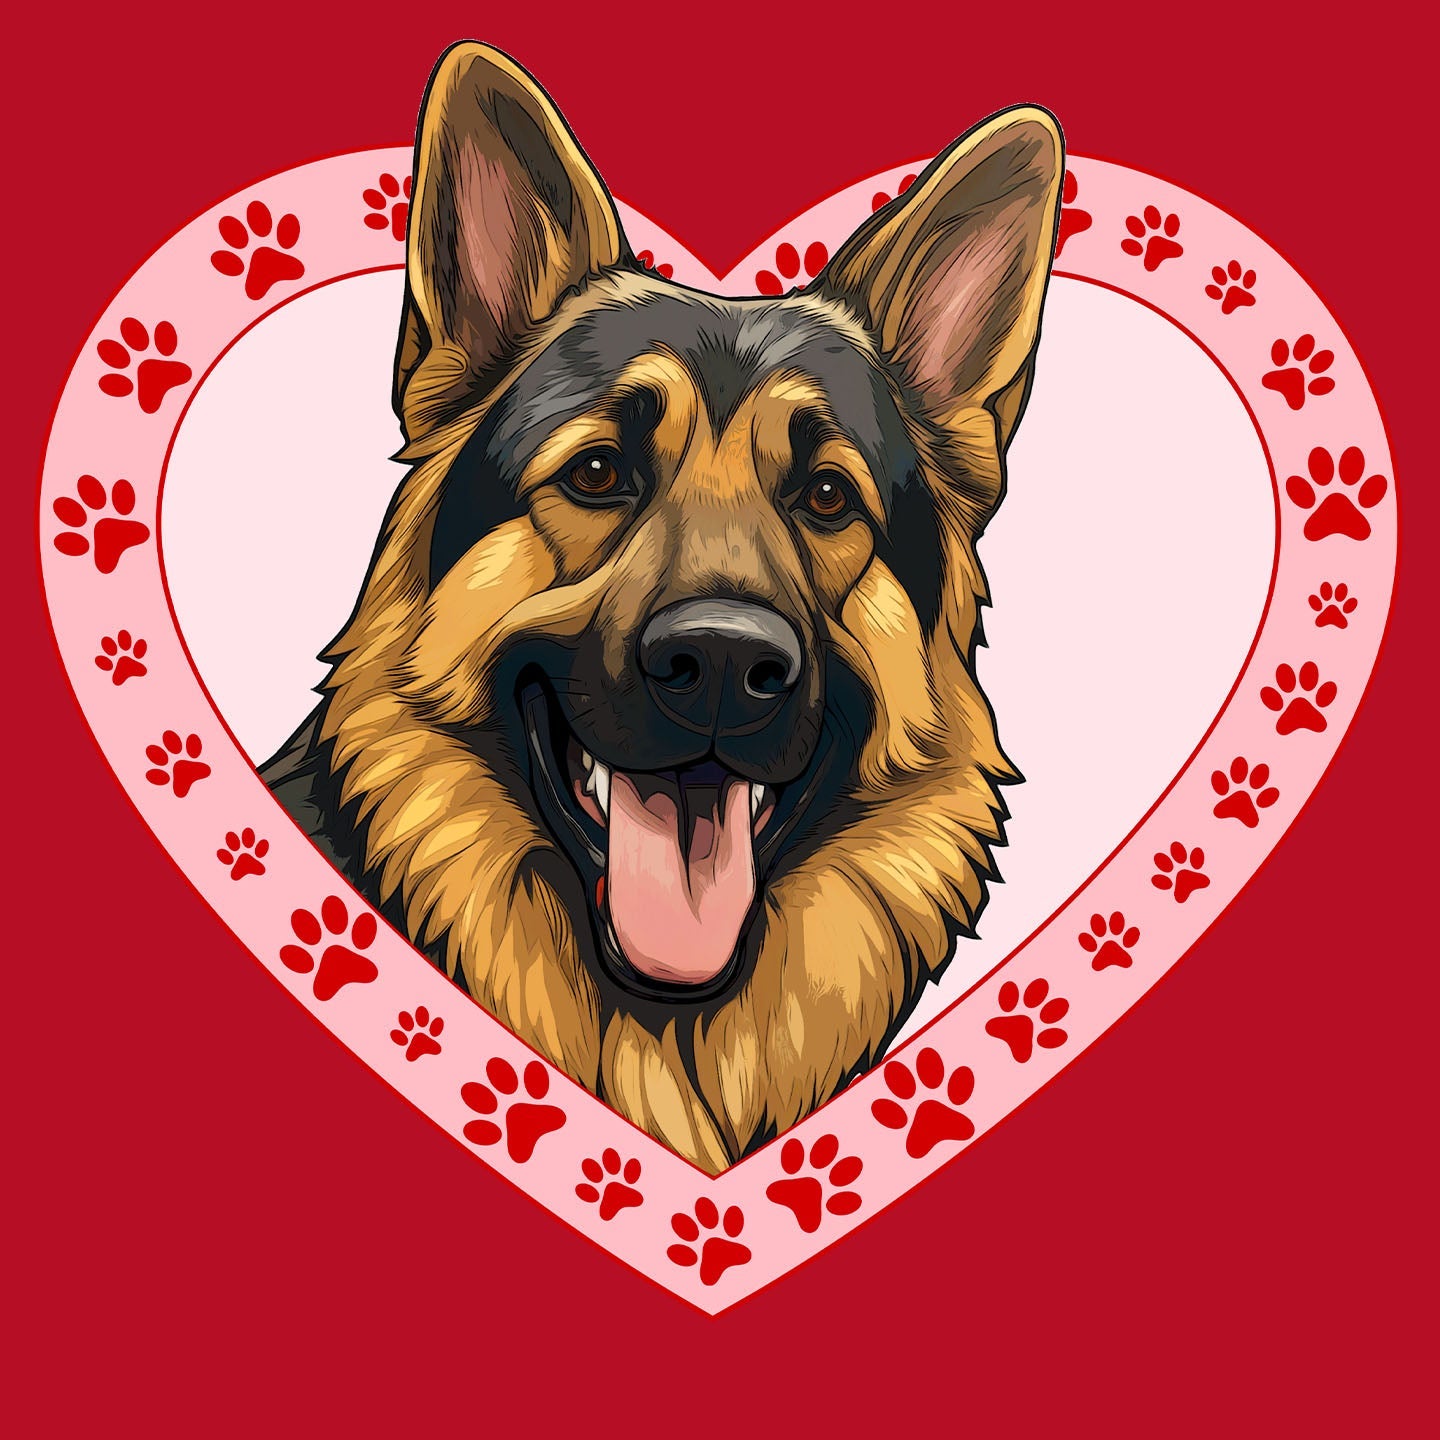 German Shepherd Dog Illustration In Heart - Women's V-Neck T-Shirt